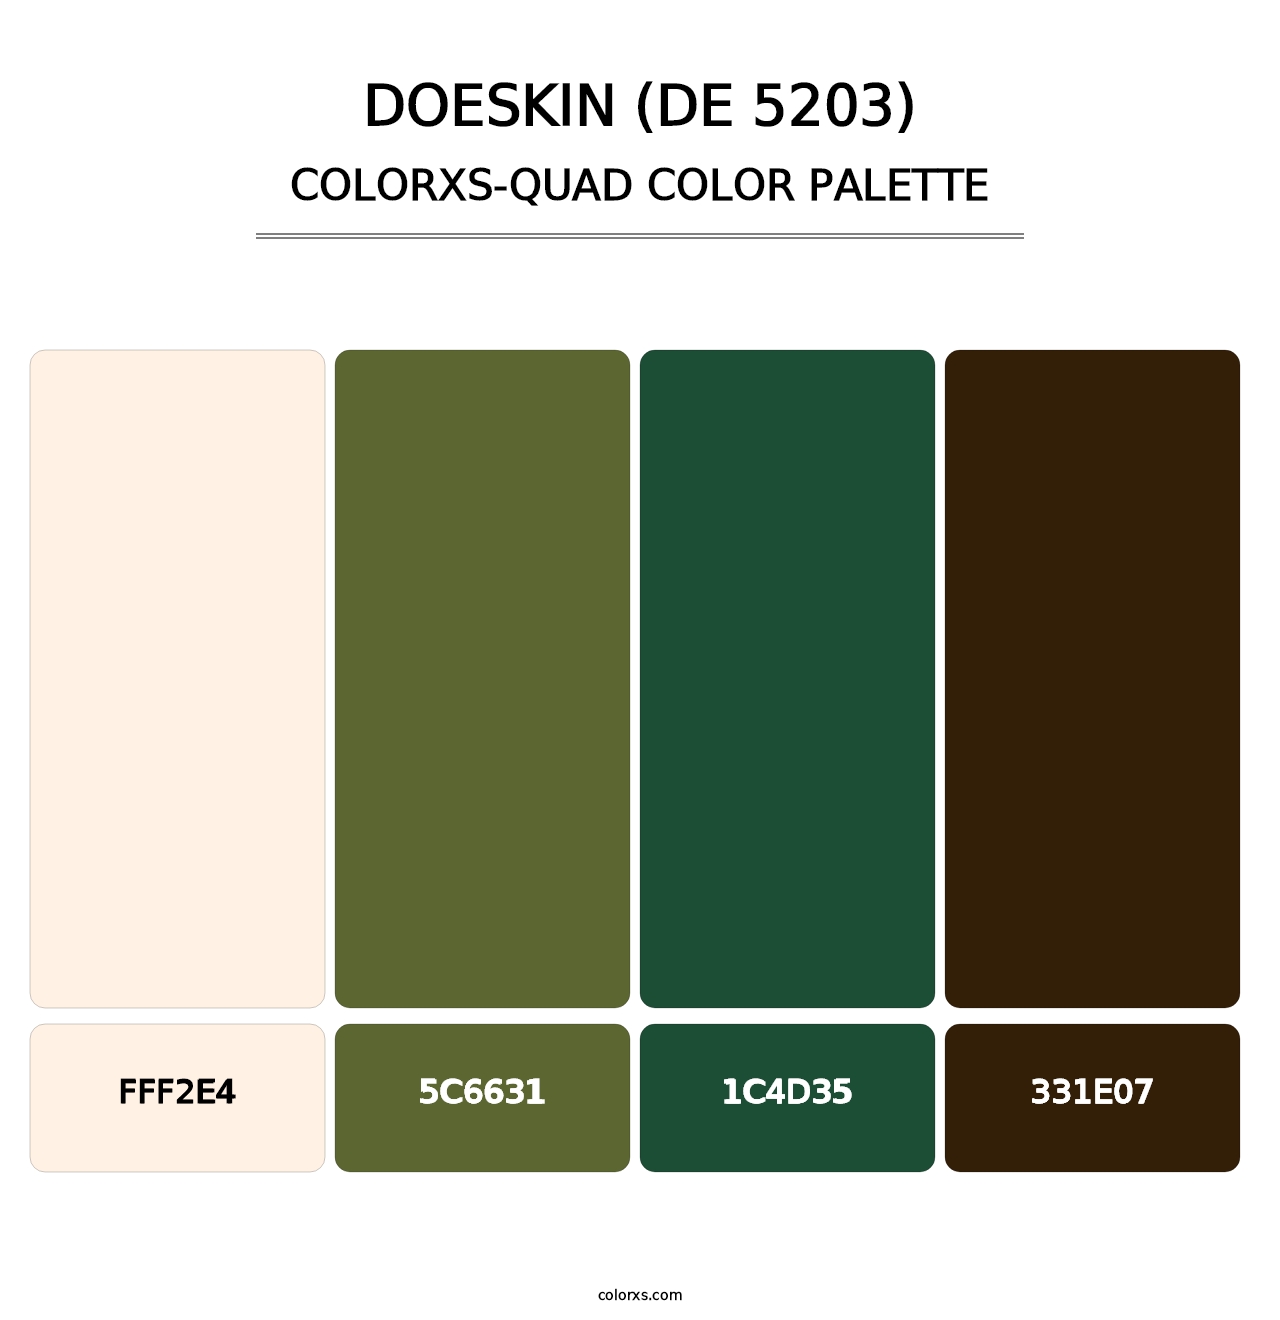 Doeskin (DE 5203) - Colorxs Quad Palette